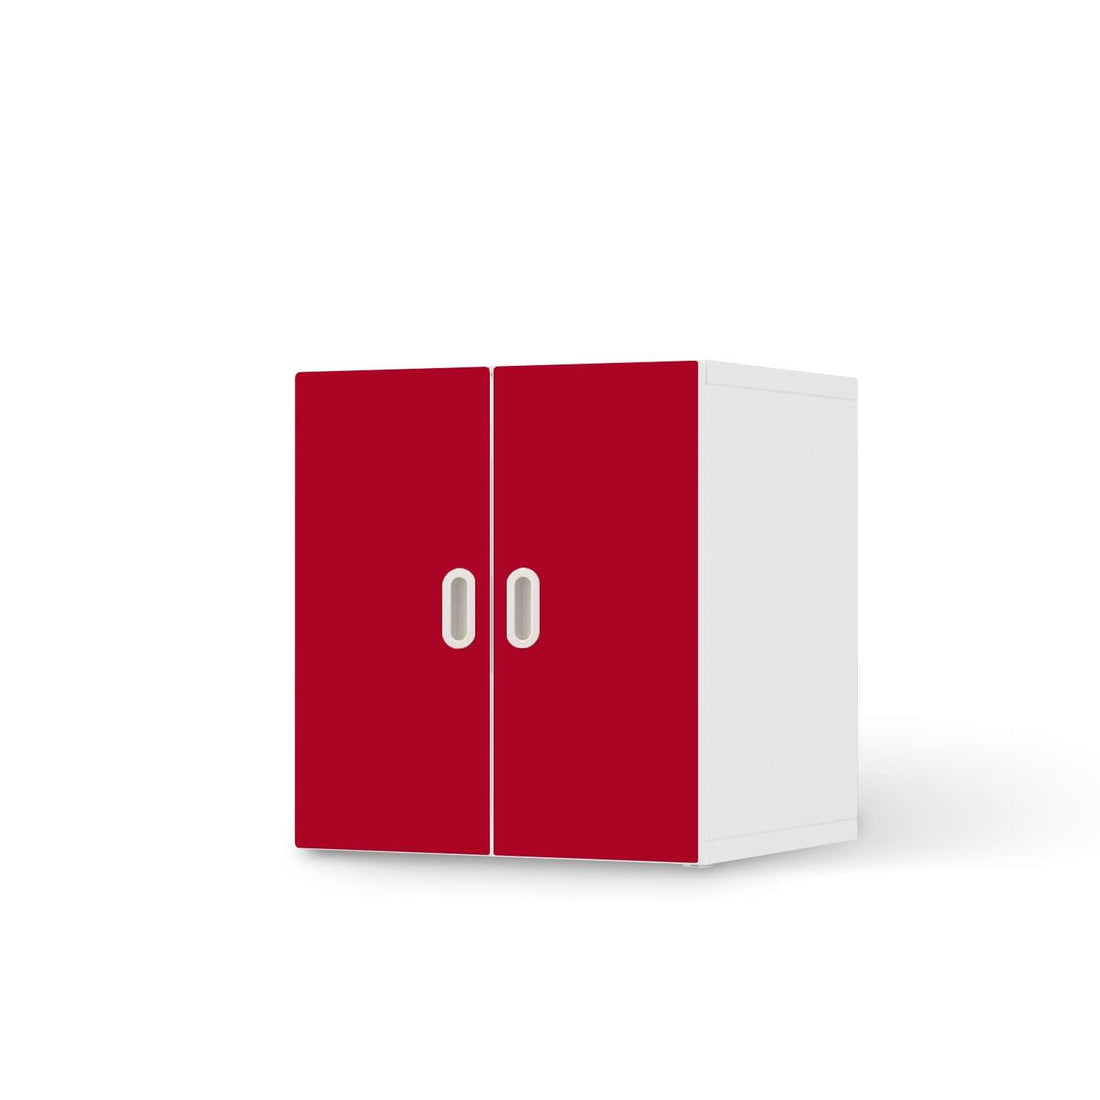 Selbstklebende Folie Rot Dark - IKEA Stuva / Fritids Schrank - 2 kleine Türen  - weiss